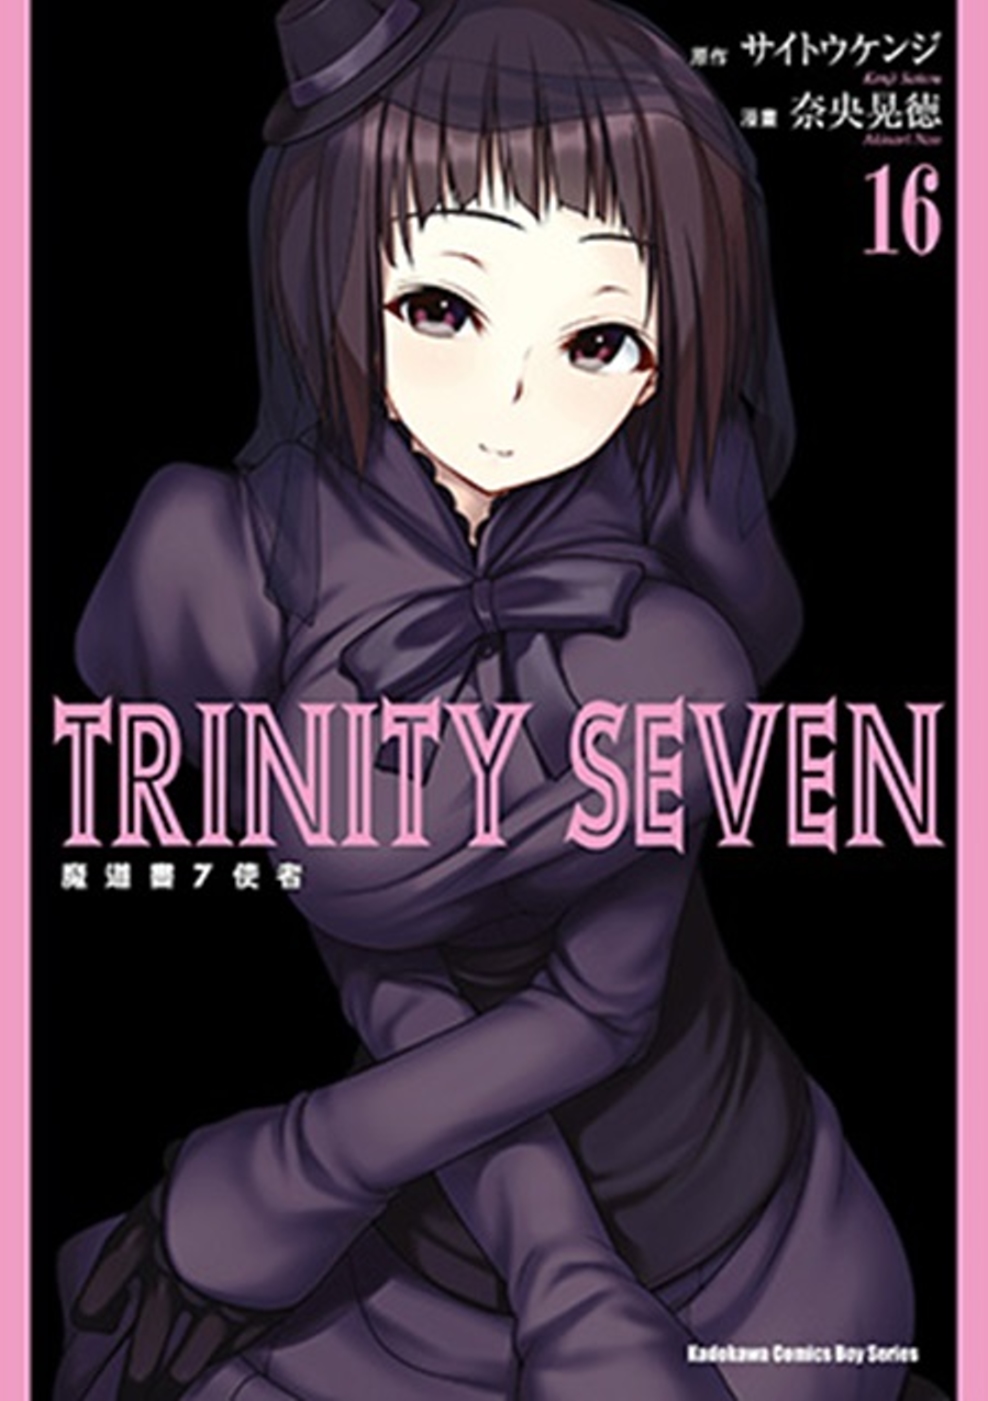 TRINITY SEVEN 魔道書7使者 (16)(限台灣)